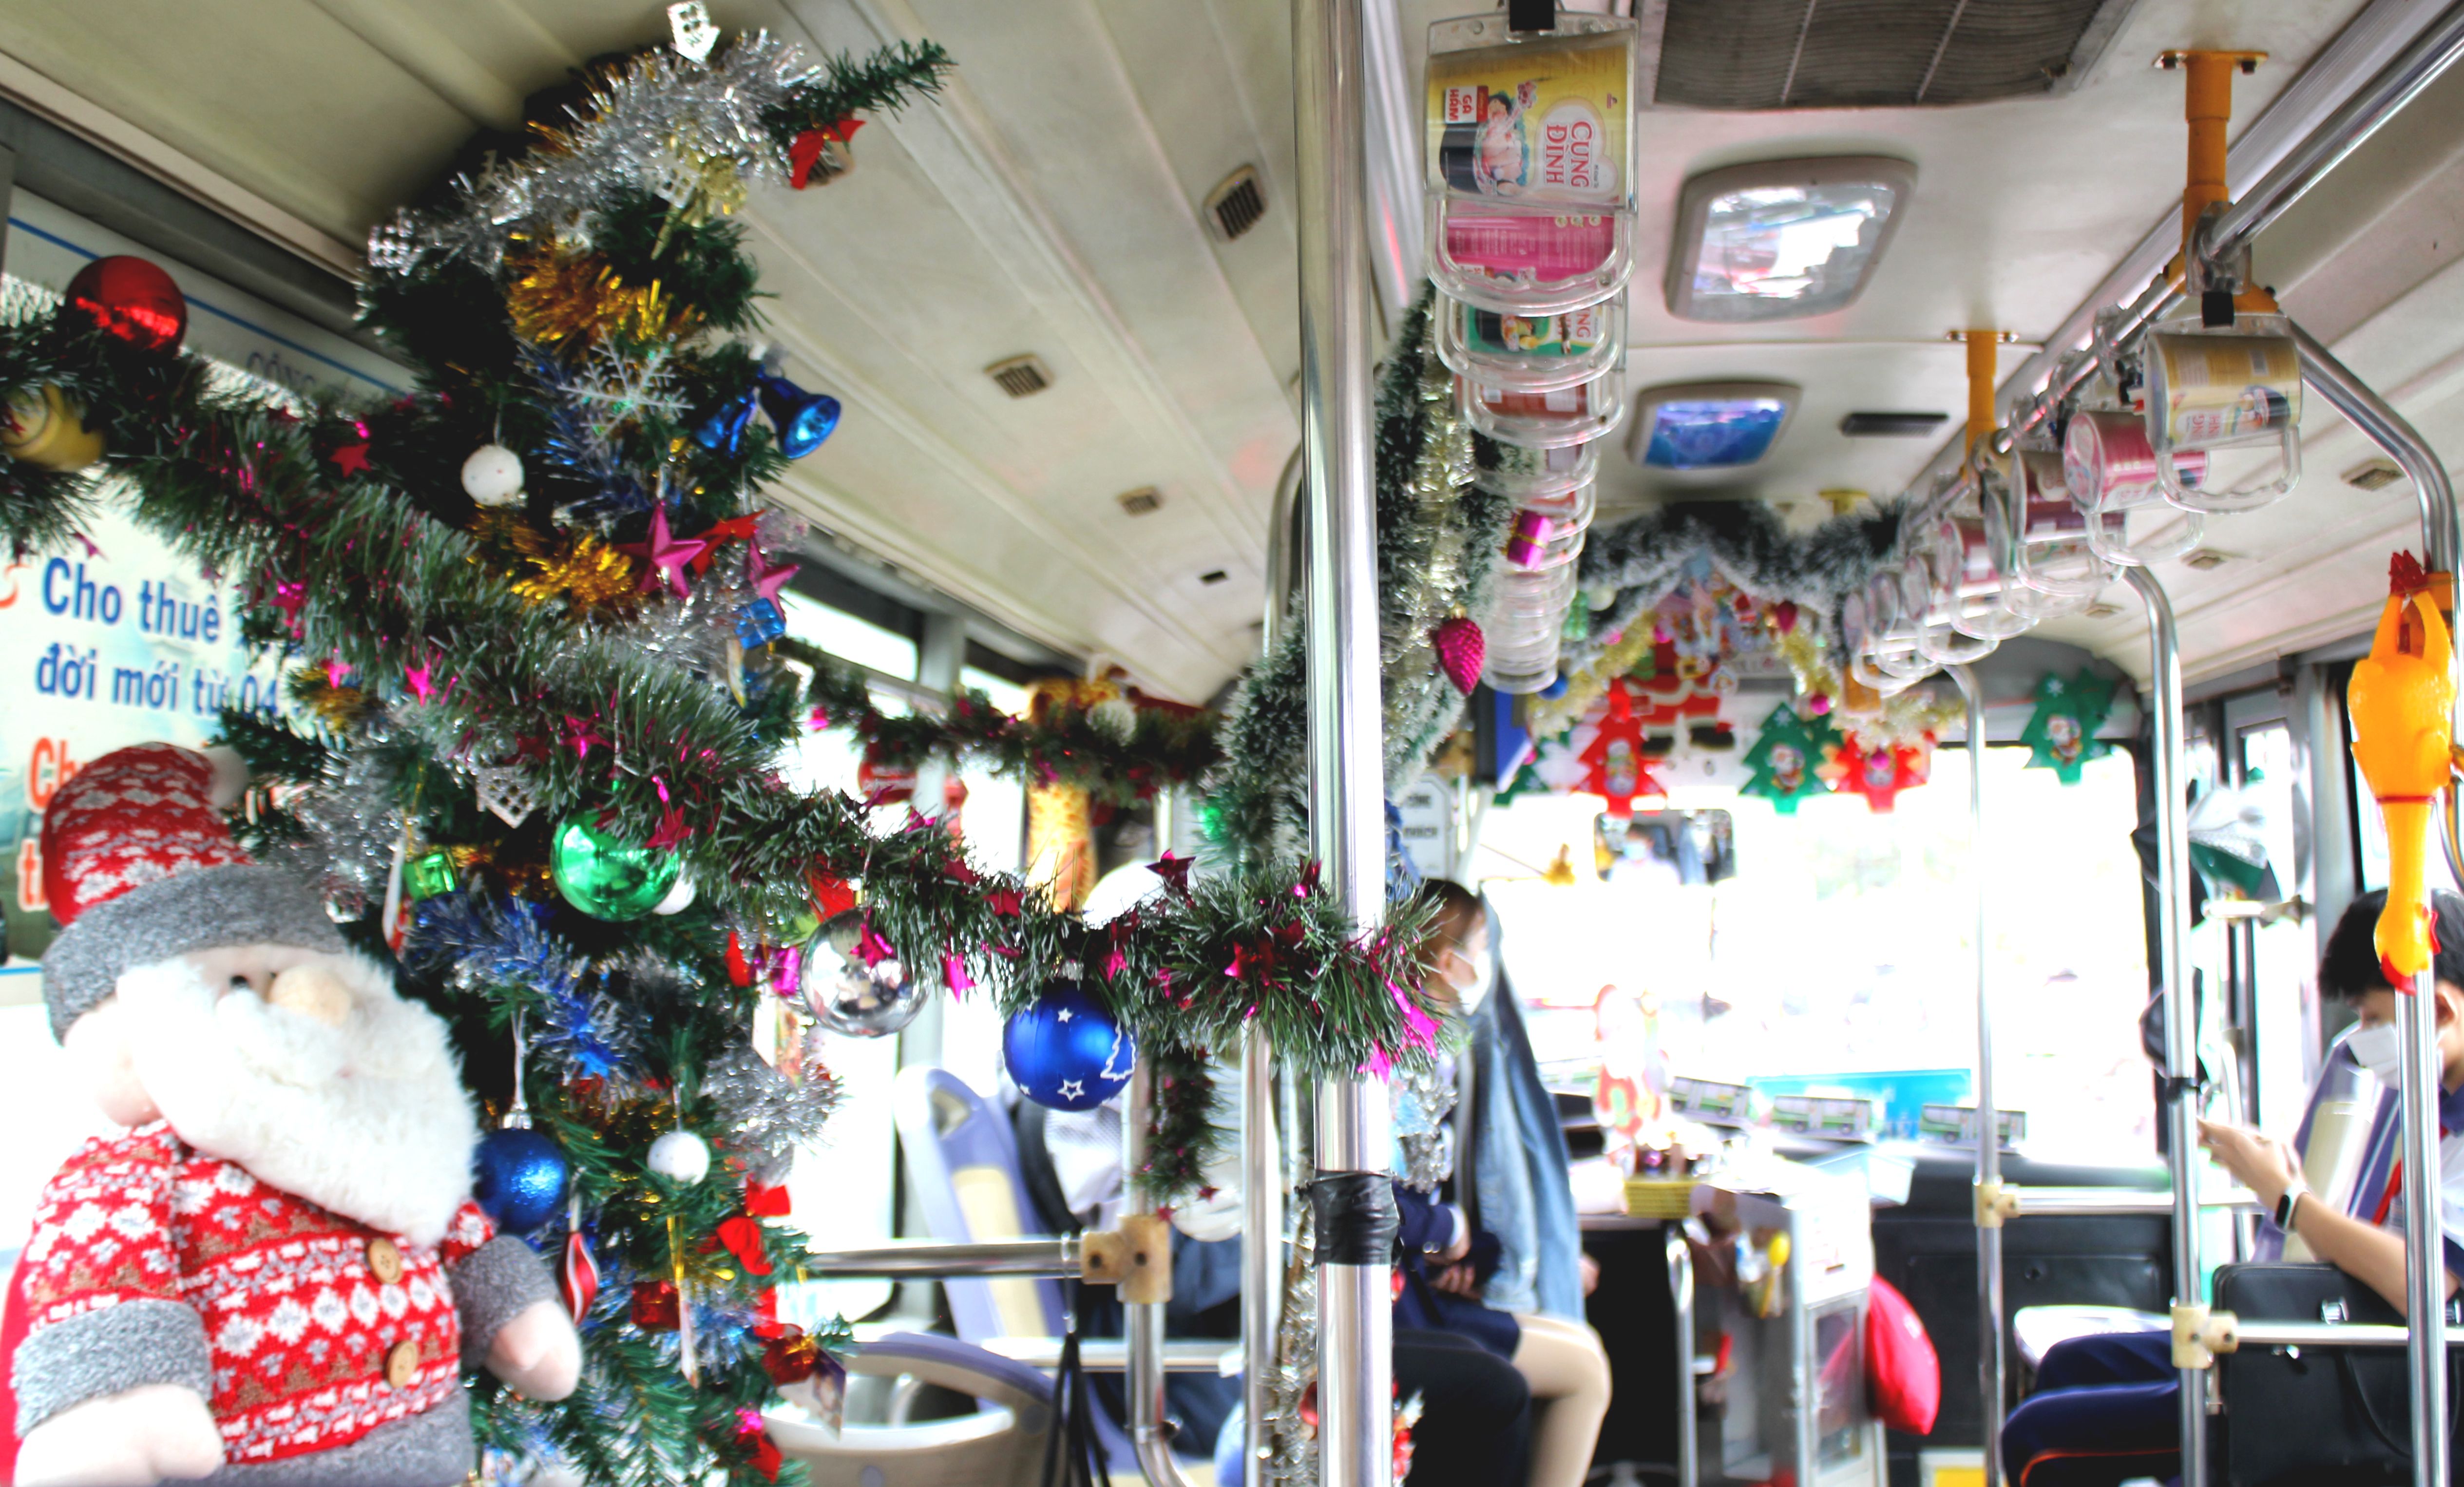 Bạn biết nơi này chưa?: Check-in Giáng sinh di động trên xe buýt